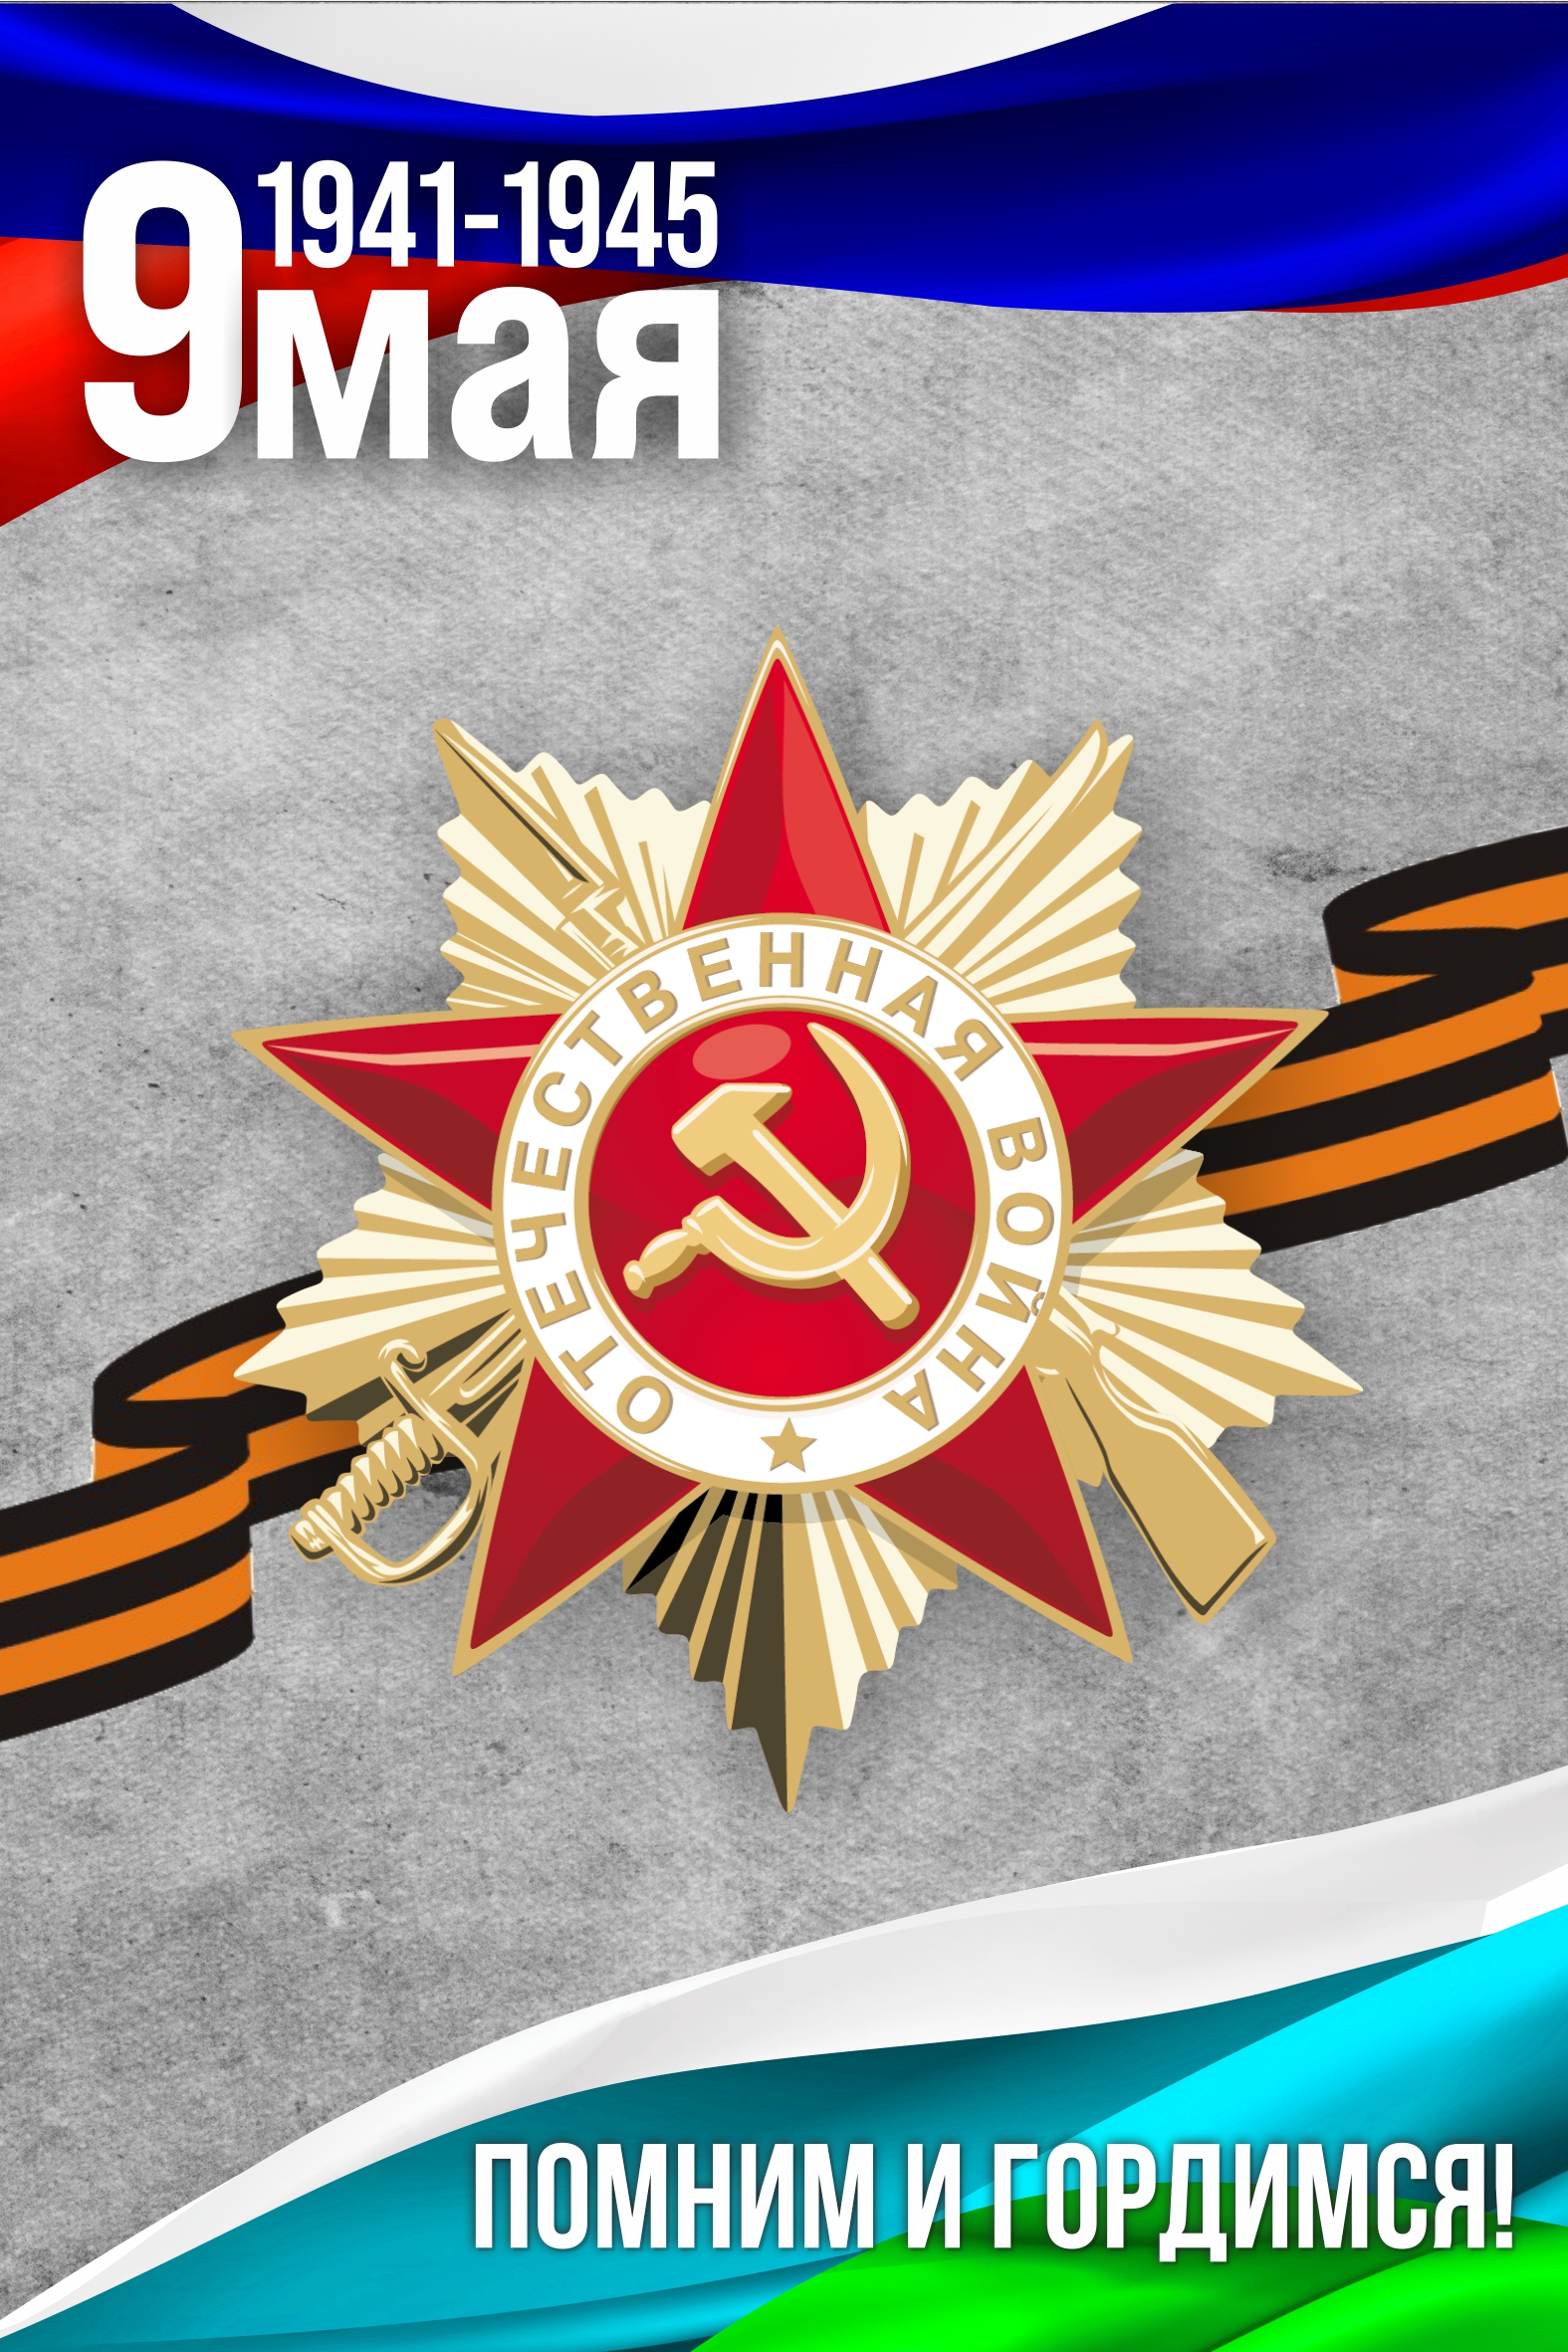 Мероприятия, посвященные 77-й годовщине Победы советского народа в Великой Отечественной войне 1941-1945 годов и 77-летию окончания Второй мировой войны